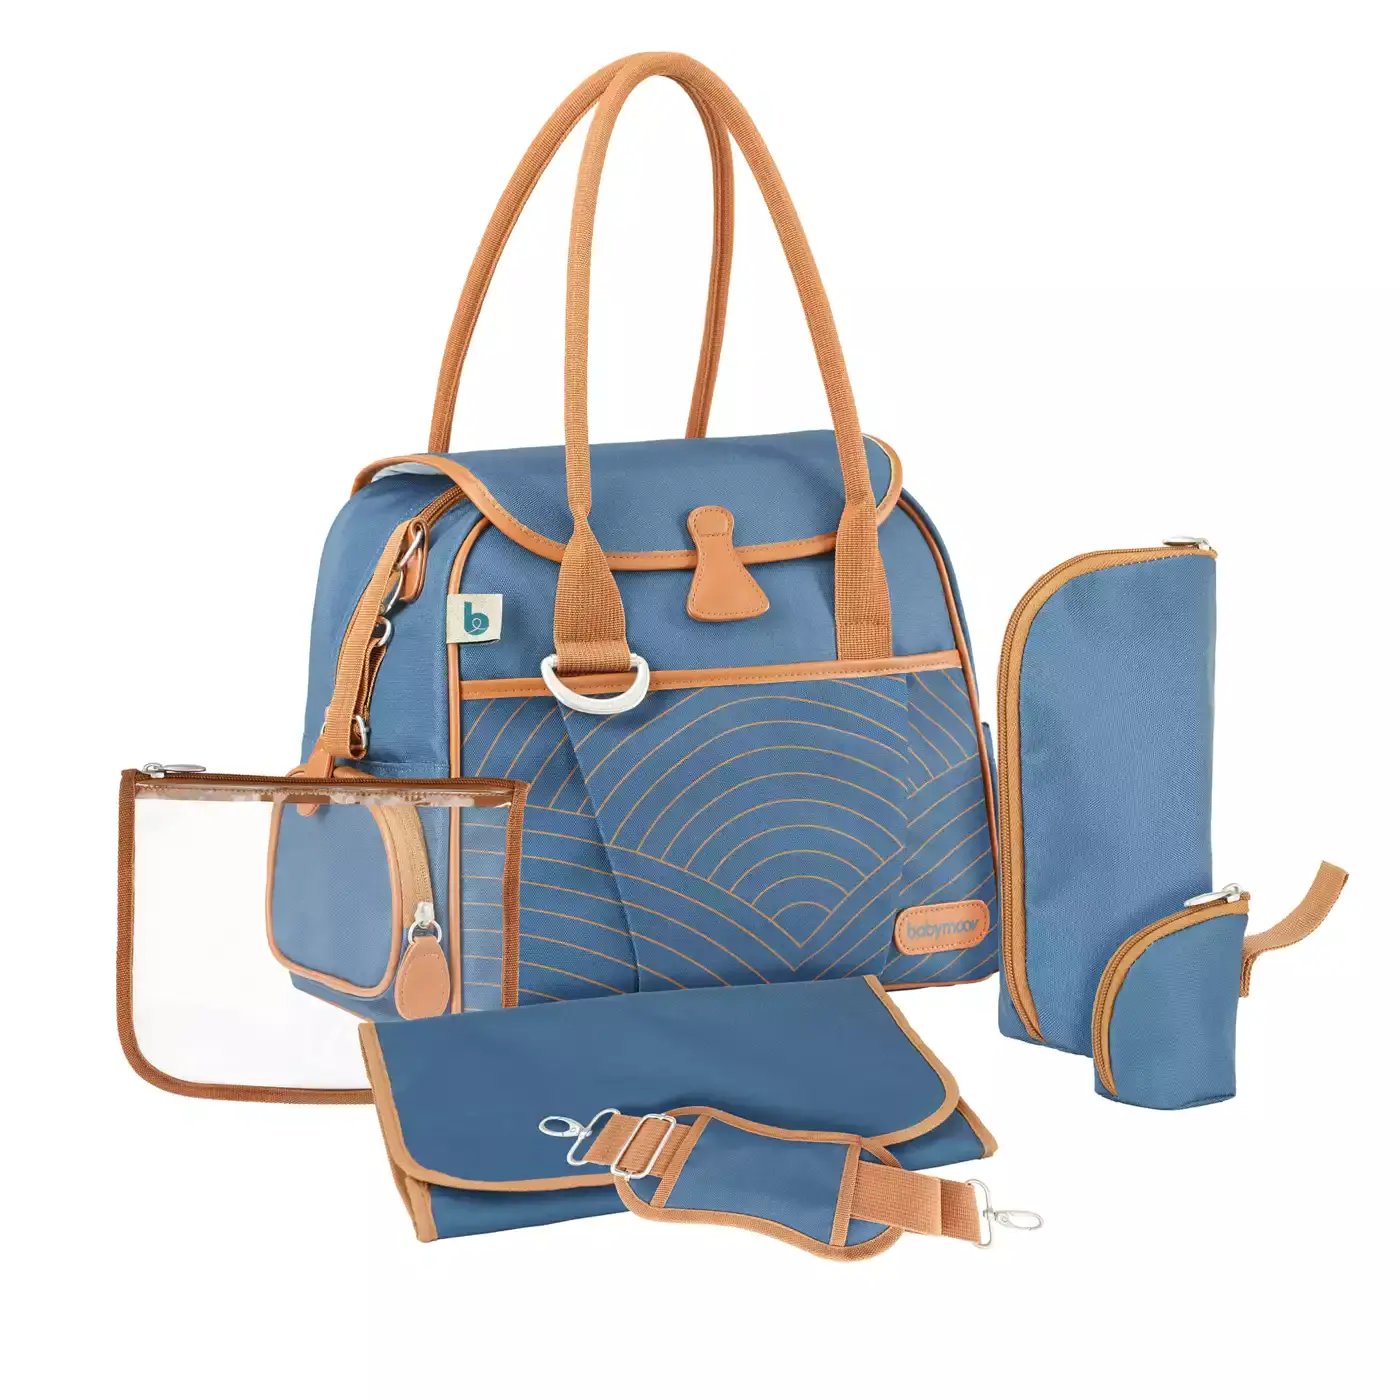 Wickeltasche Style Bag Blue Navy babymoov Blau 2000565168519 1